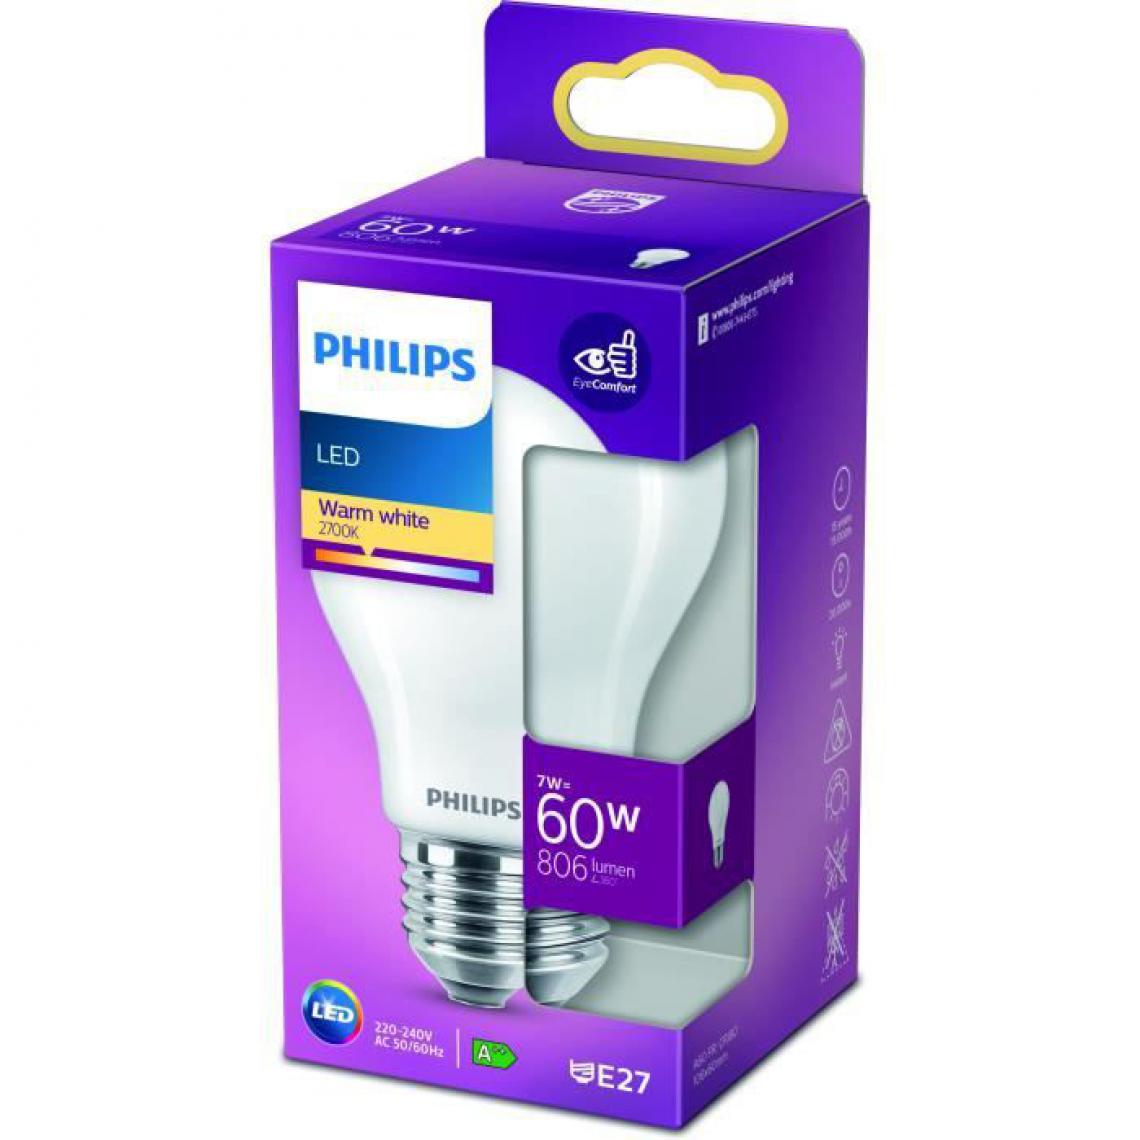 Philips - Philips ampoule LED Equivalent 60W E27 Blanc chaud Non dimmable, Plastique - Ampoules LED